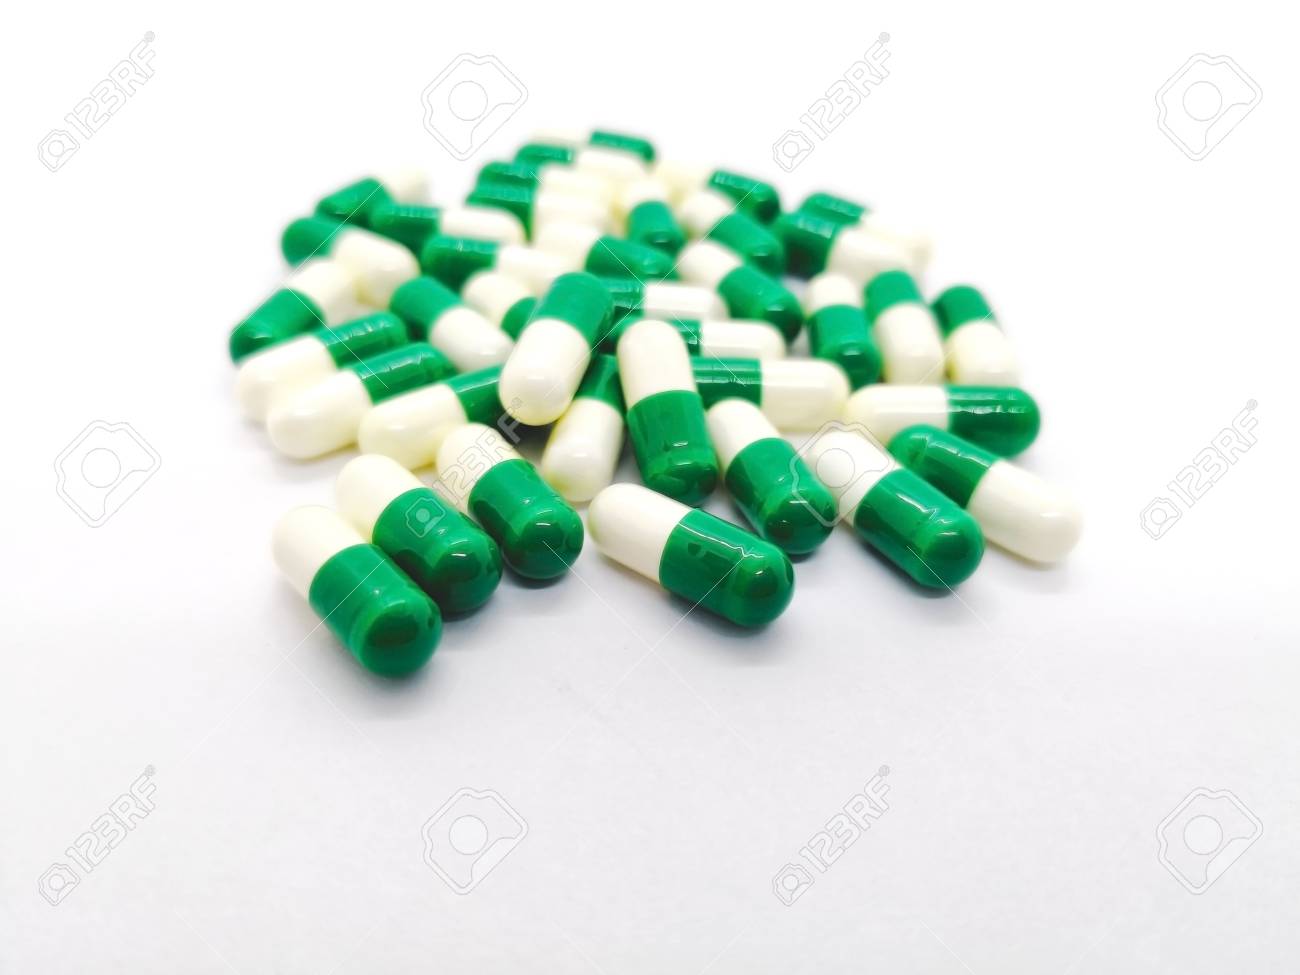 tramadol capsules 50mg